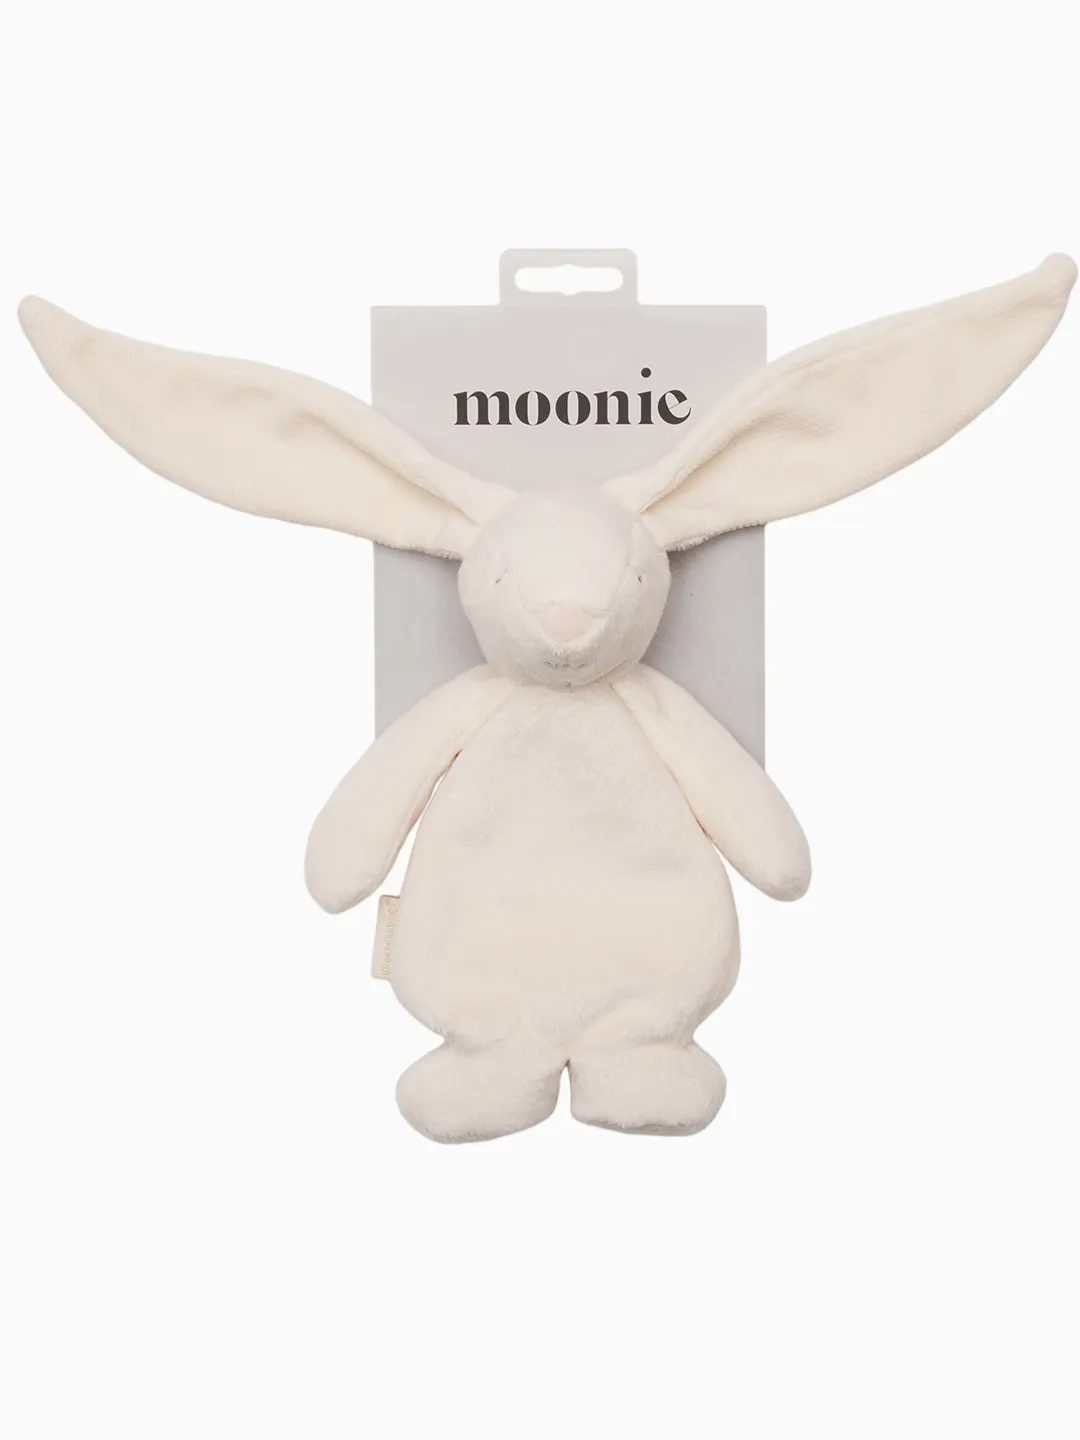 Moonie Sensoric Bunny, Mooni sensoorne kaisujänes, jänku